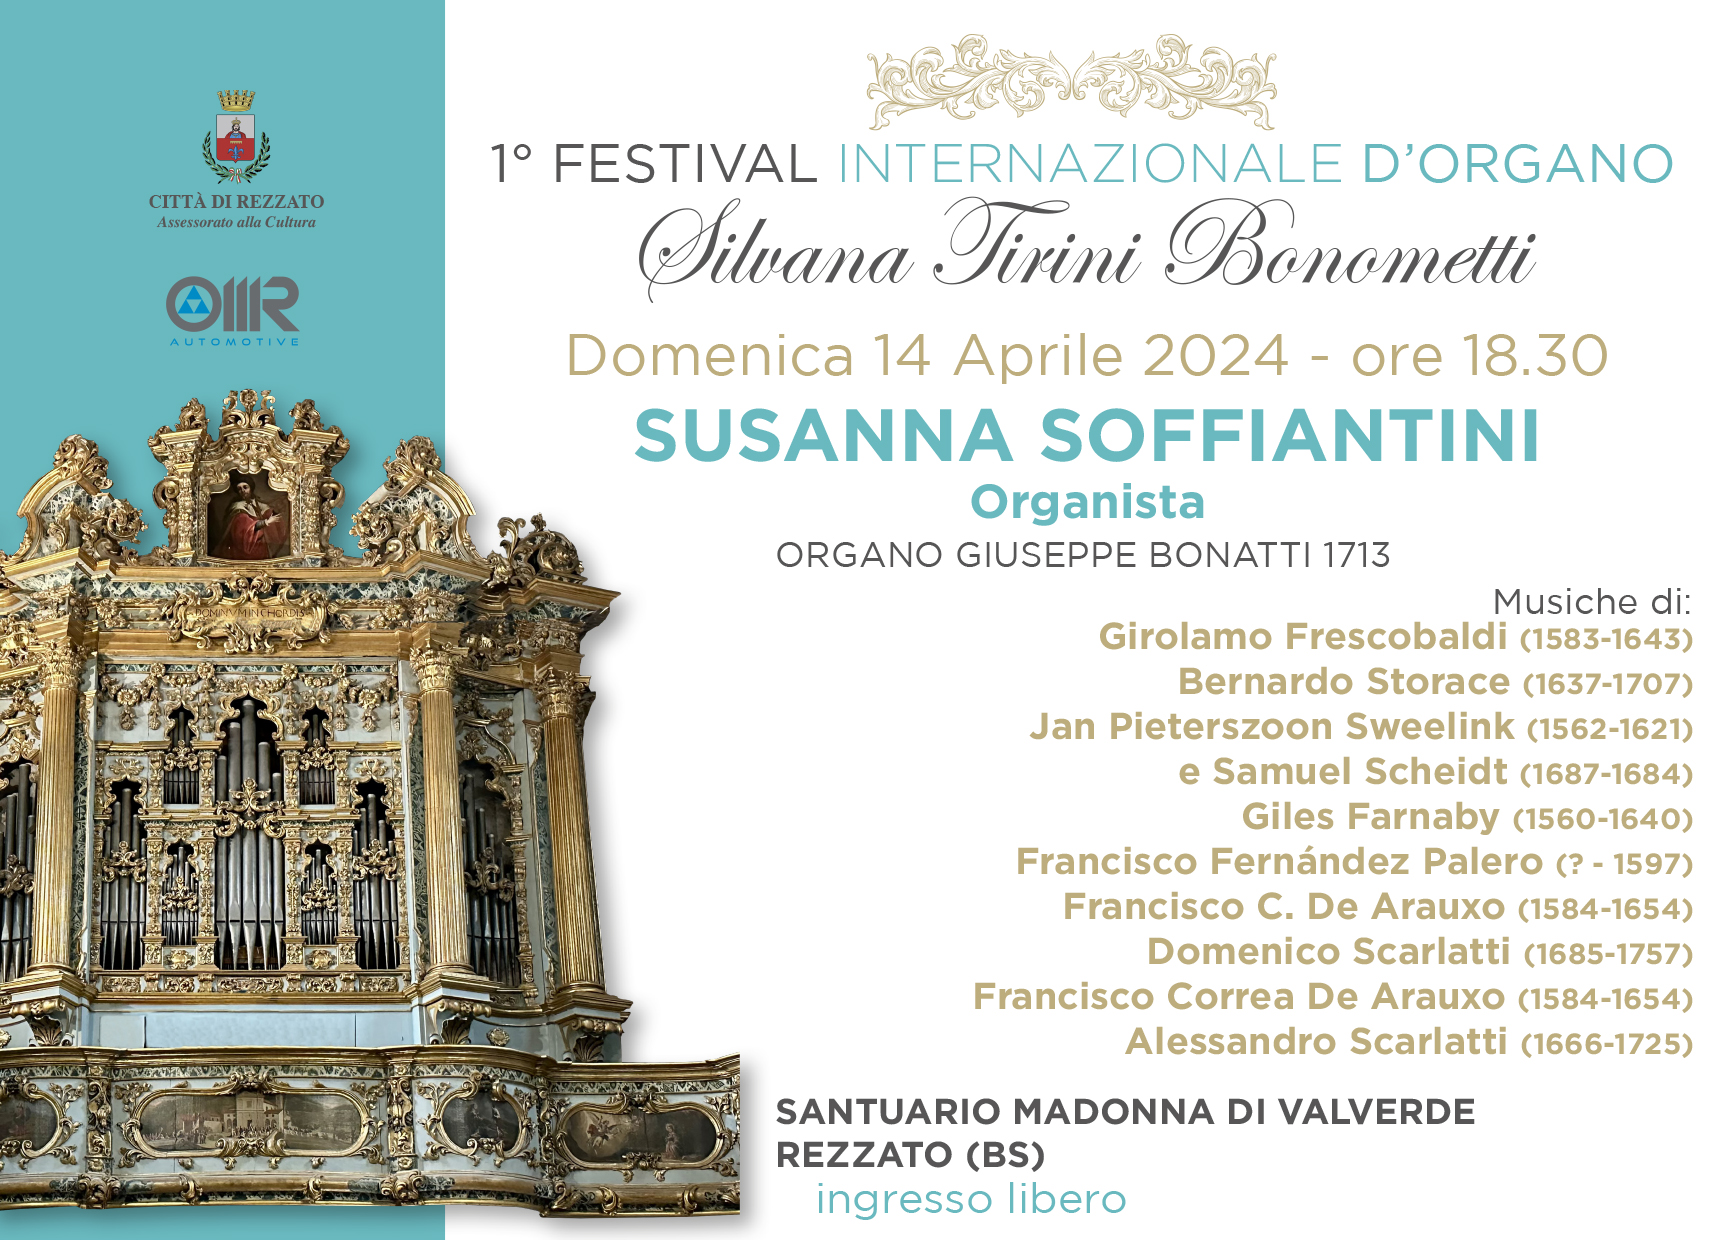 1° Festival internazionale d'organo "Silvana Tirini Bonometti": a Rezzato arriva Susanna Soffiantini